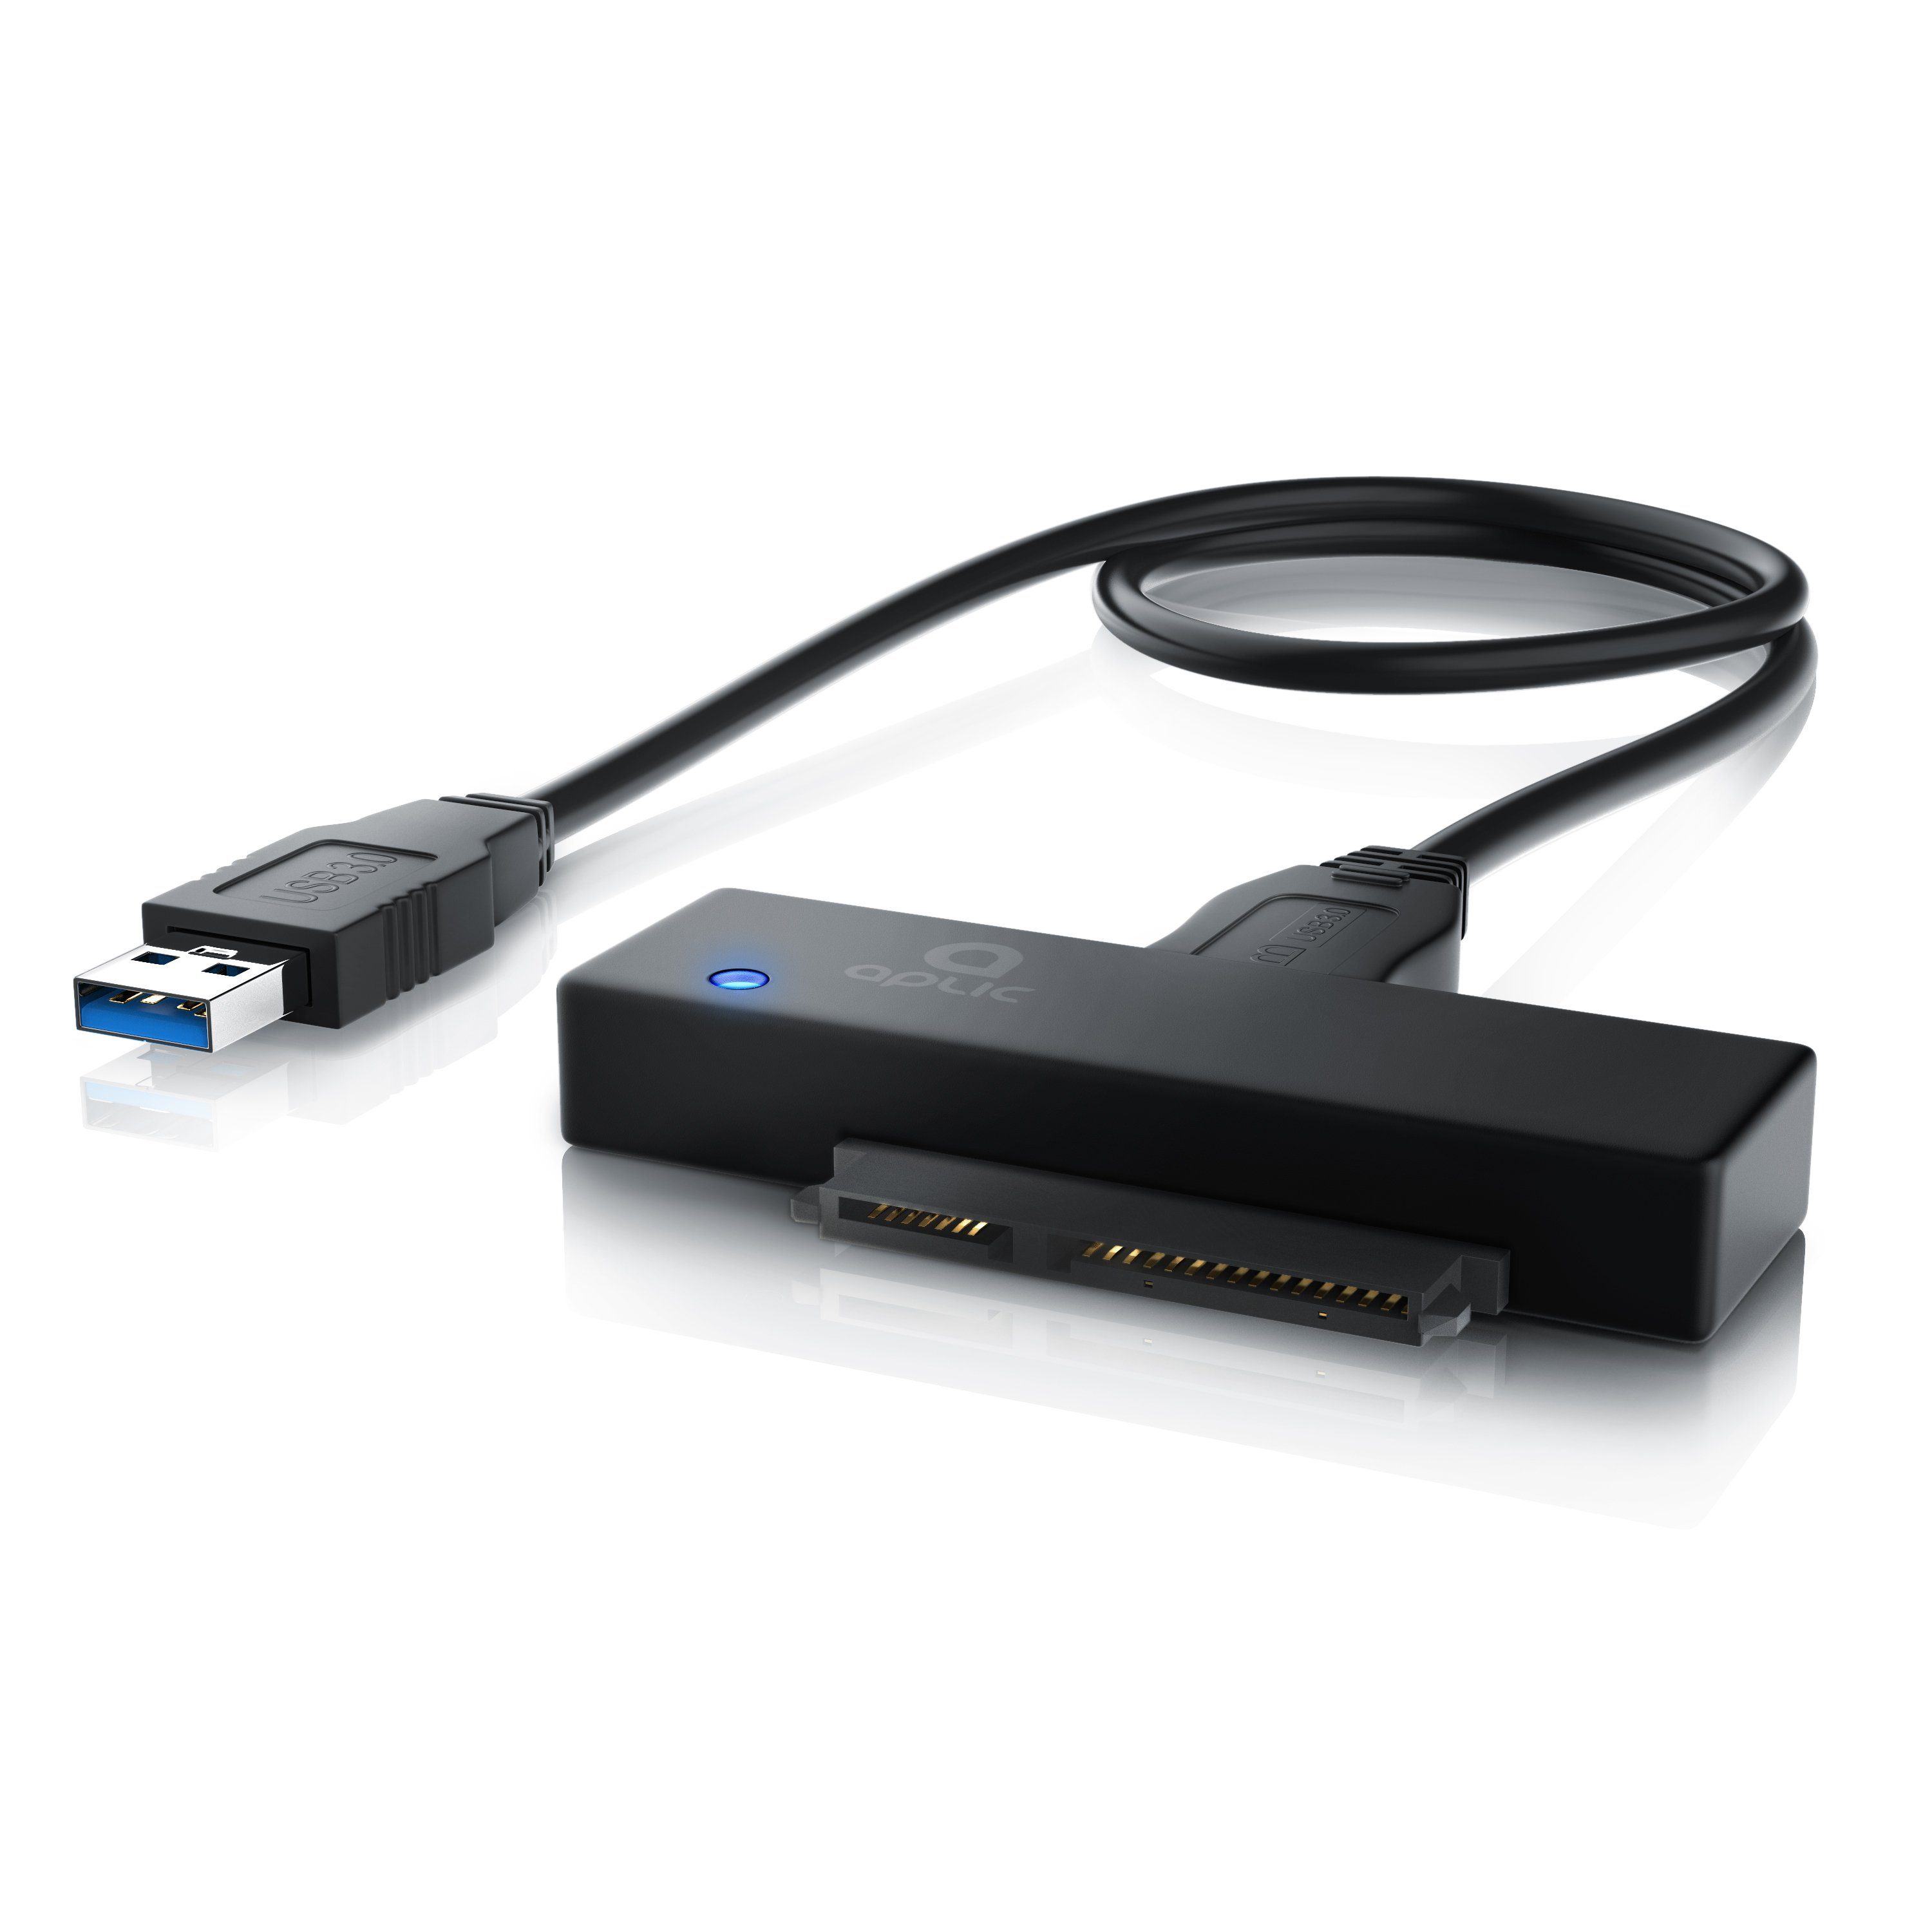 Aplic Computer-Adapter zu SATA 3.0 / 6GB; USB 3.0 Typ A, USB 3.0 zu SATA  Konverter Kabel inkl. Netzteil - SATA 1/2/3 Festplatten & Laufwerke - UASP  online kaufen | OTTO